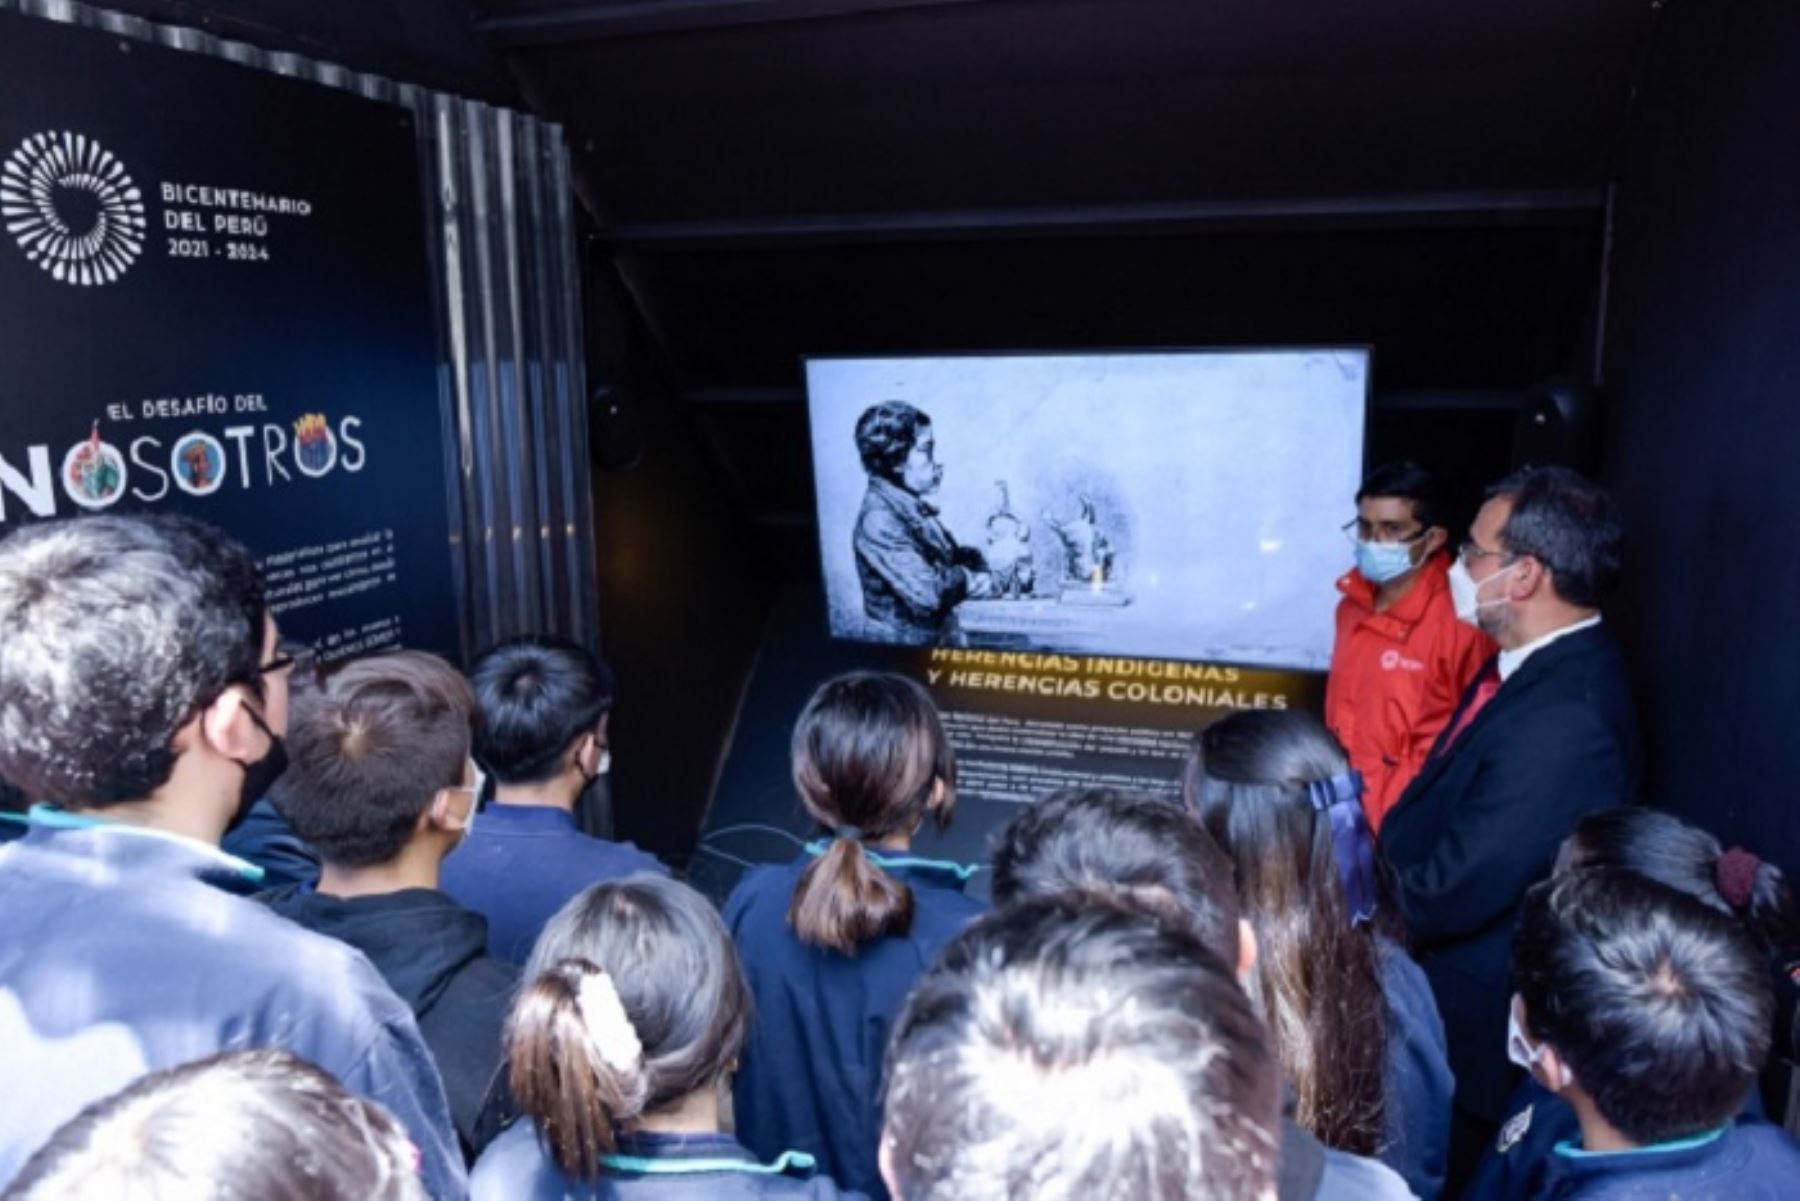 La exposición itinerante “El desafío del nosotros” ya ha recorrido las ciudades de Ayacucho, Junín y Piura.